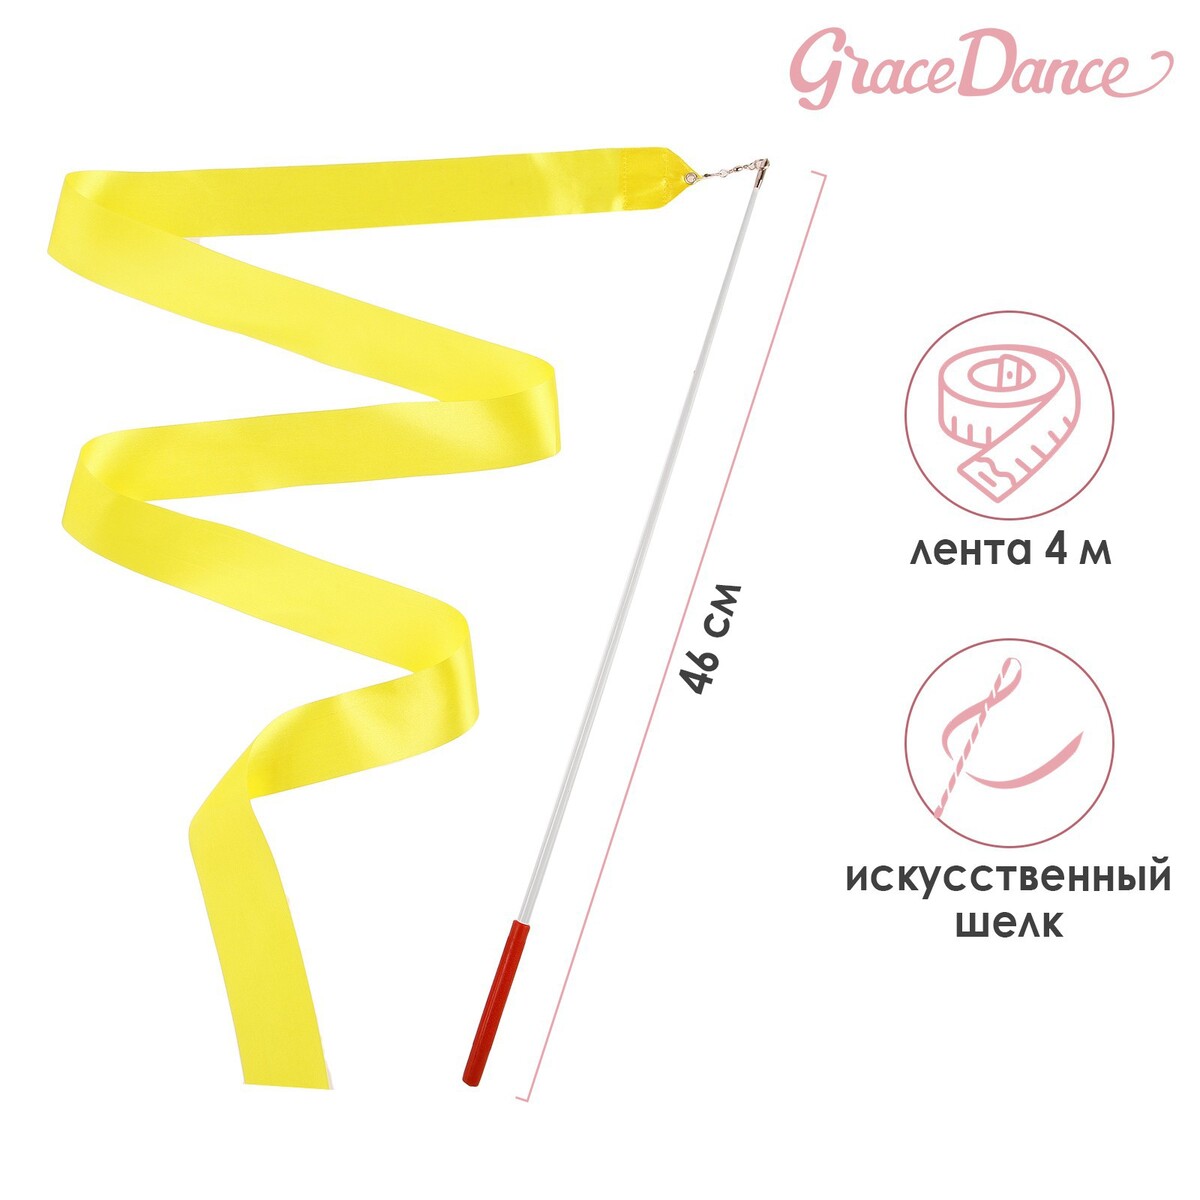 Лента для художественной гимнастики с палочкой grace dance, 4 м, цвет желтый лента гимнастическая с палочкой grace dance 4 м синий